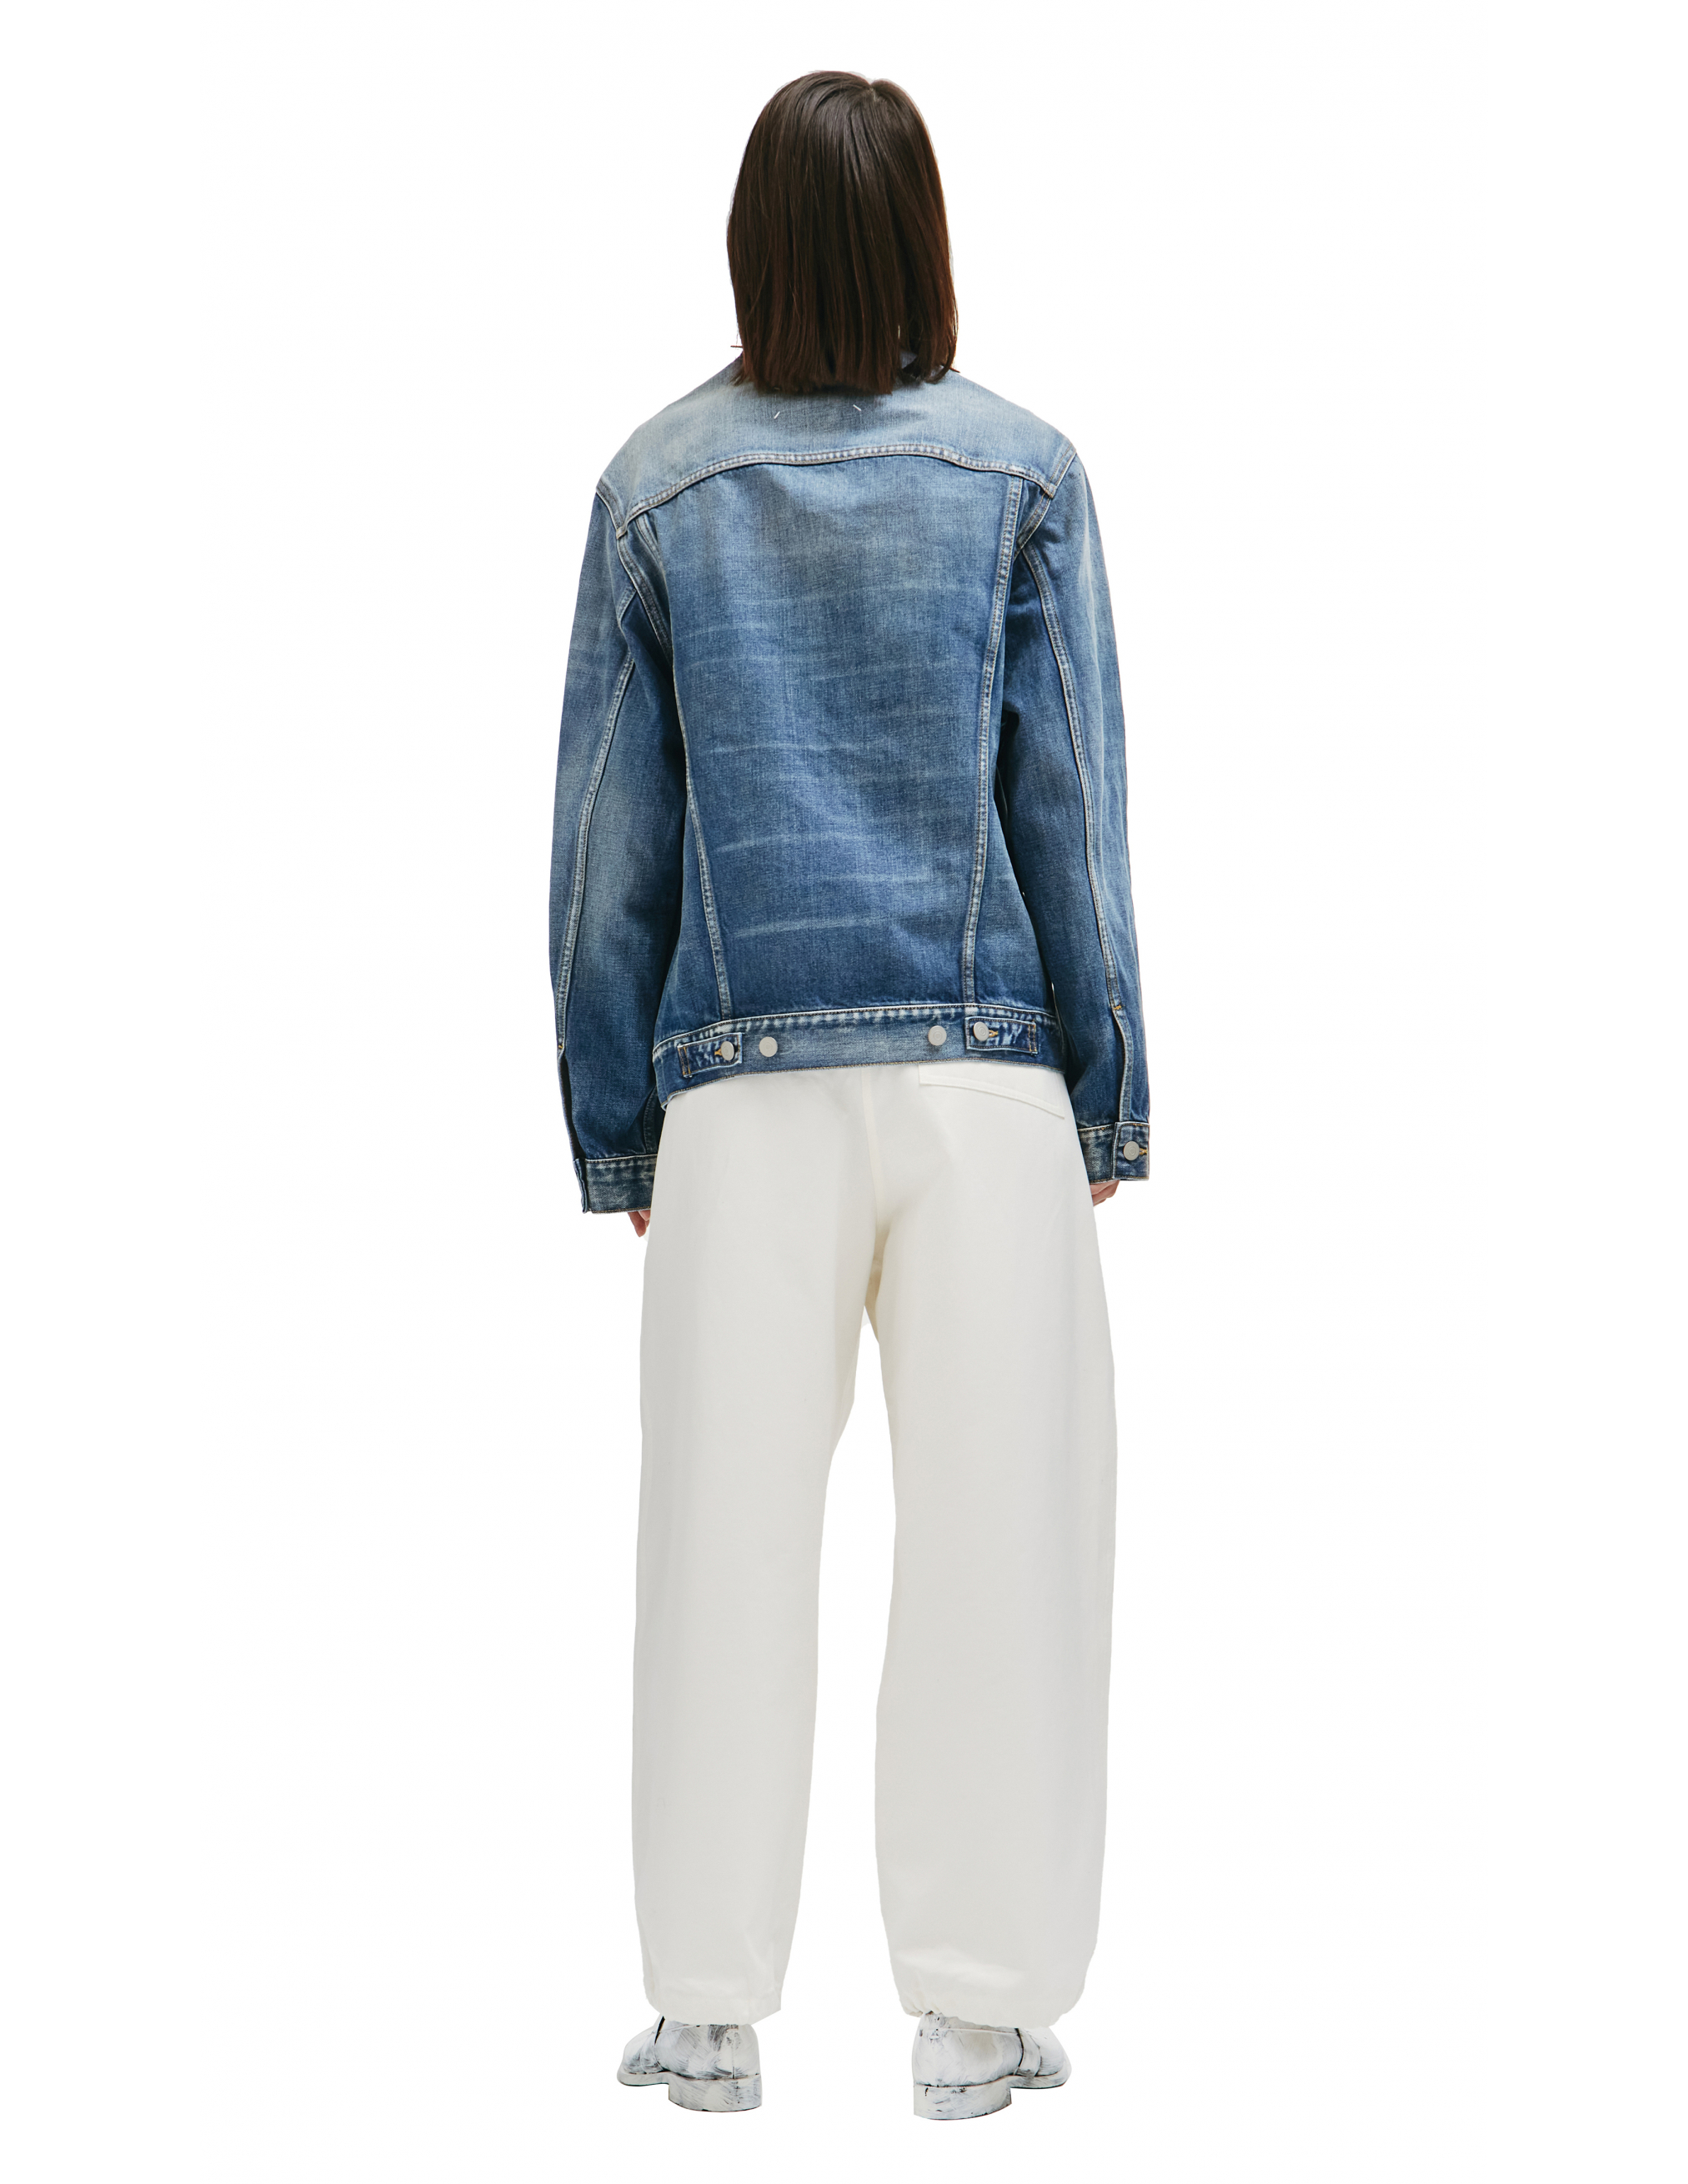 Синяя джинсовая куртка без воротника - Maison Margiela S51AM0447/S30561/966 Фото 3